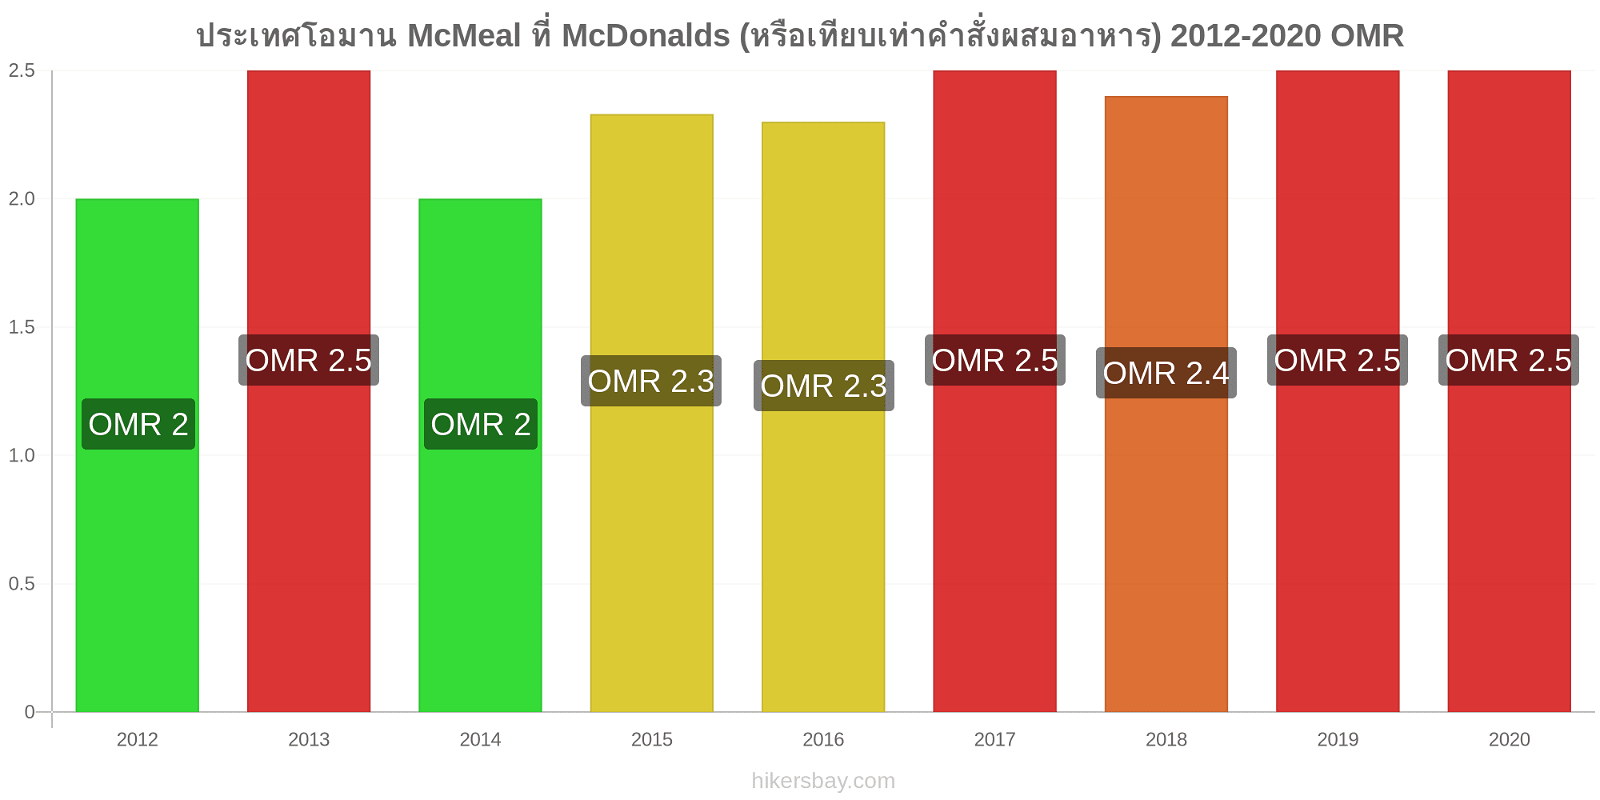 ประเทศโอมาน การเปลี่ยนแปลงราคา McMeal ที่ McDonalds (หรือเทียบเท่าคำสั่งผสมอาหาร) hikersbay.com